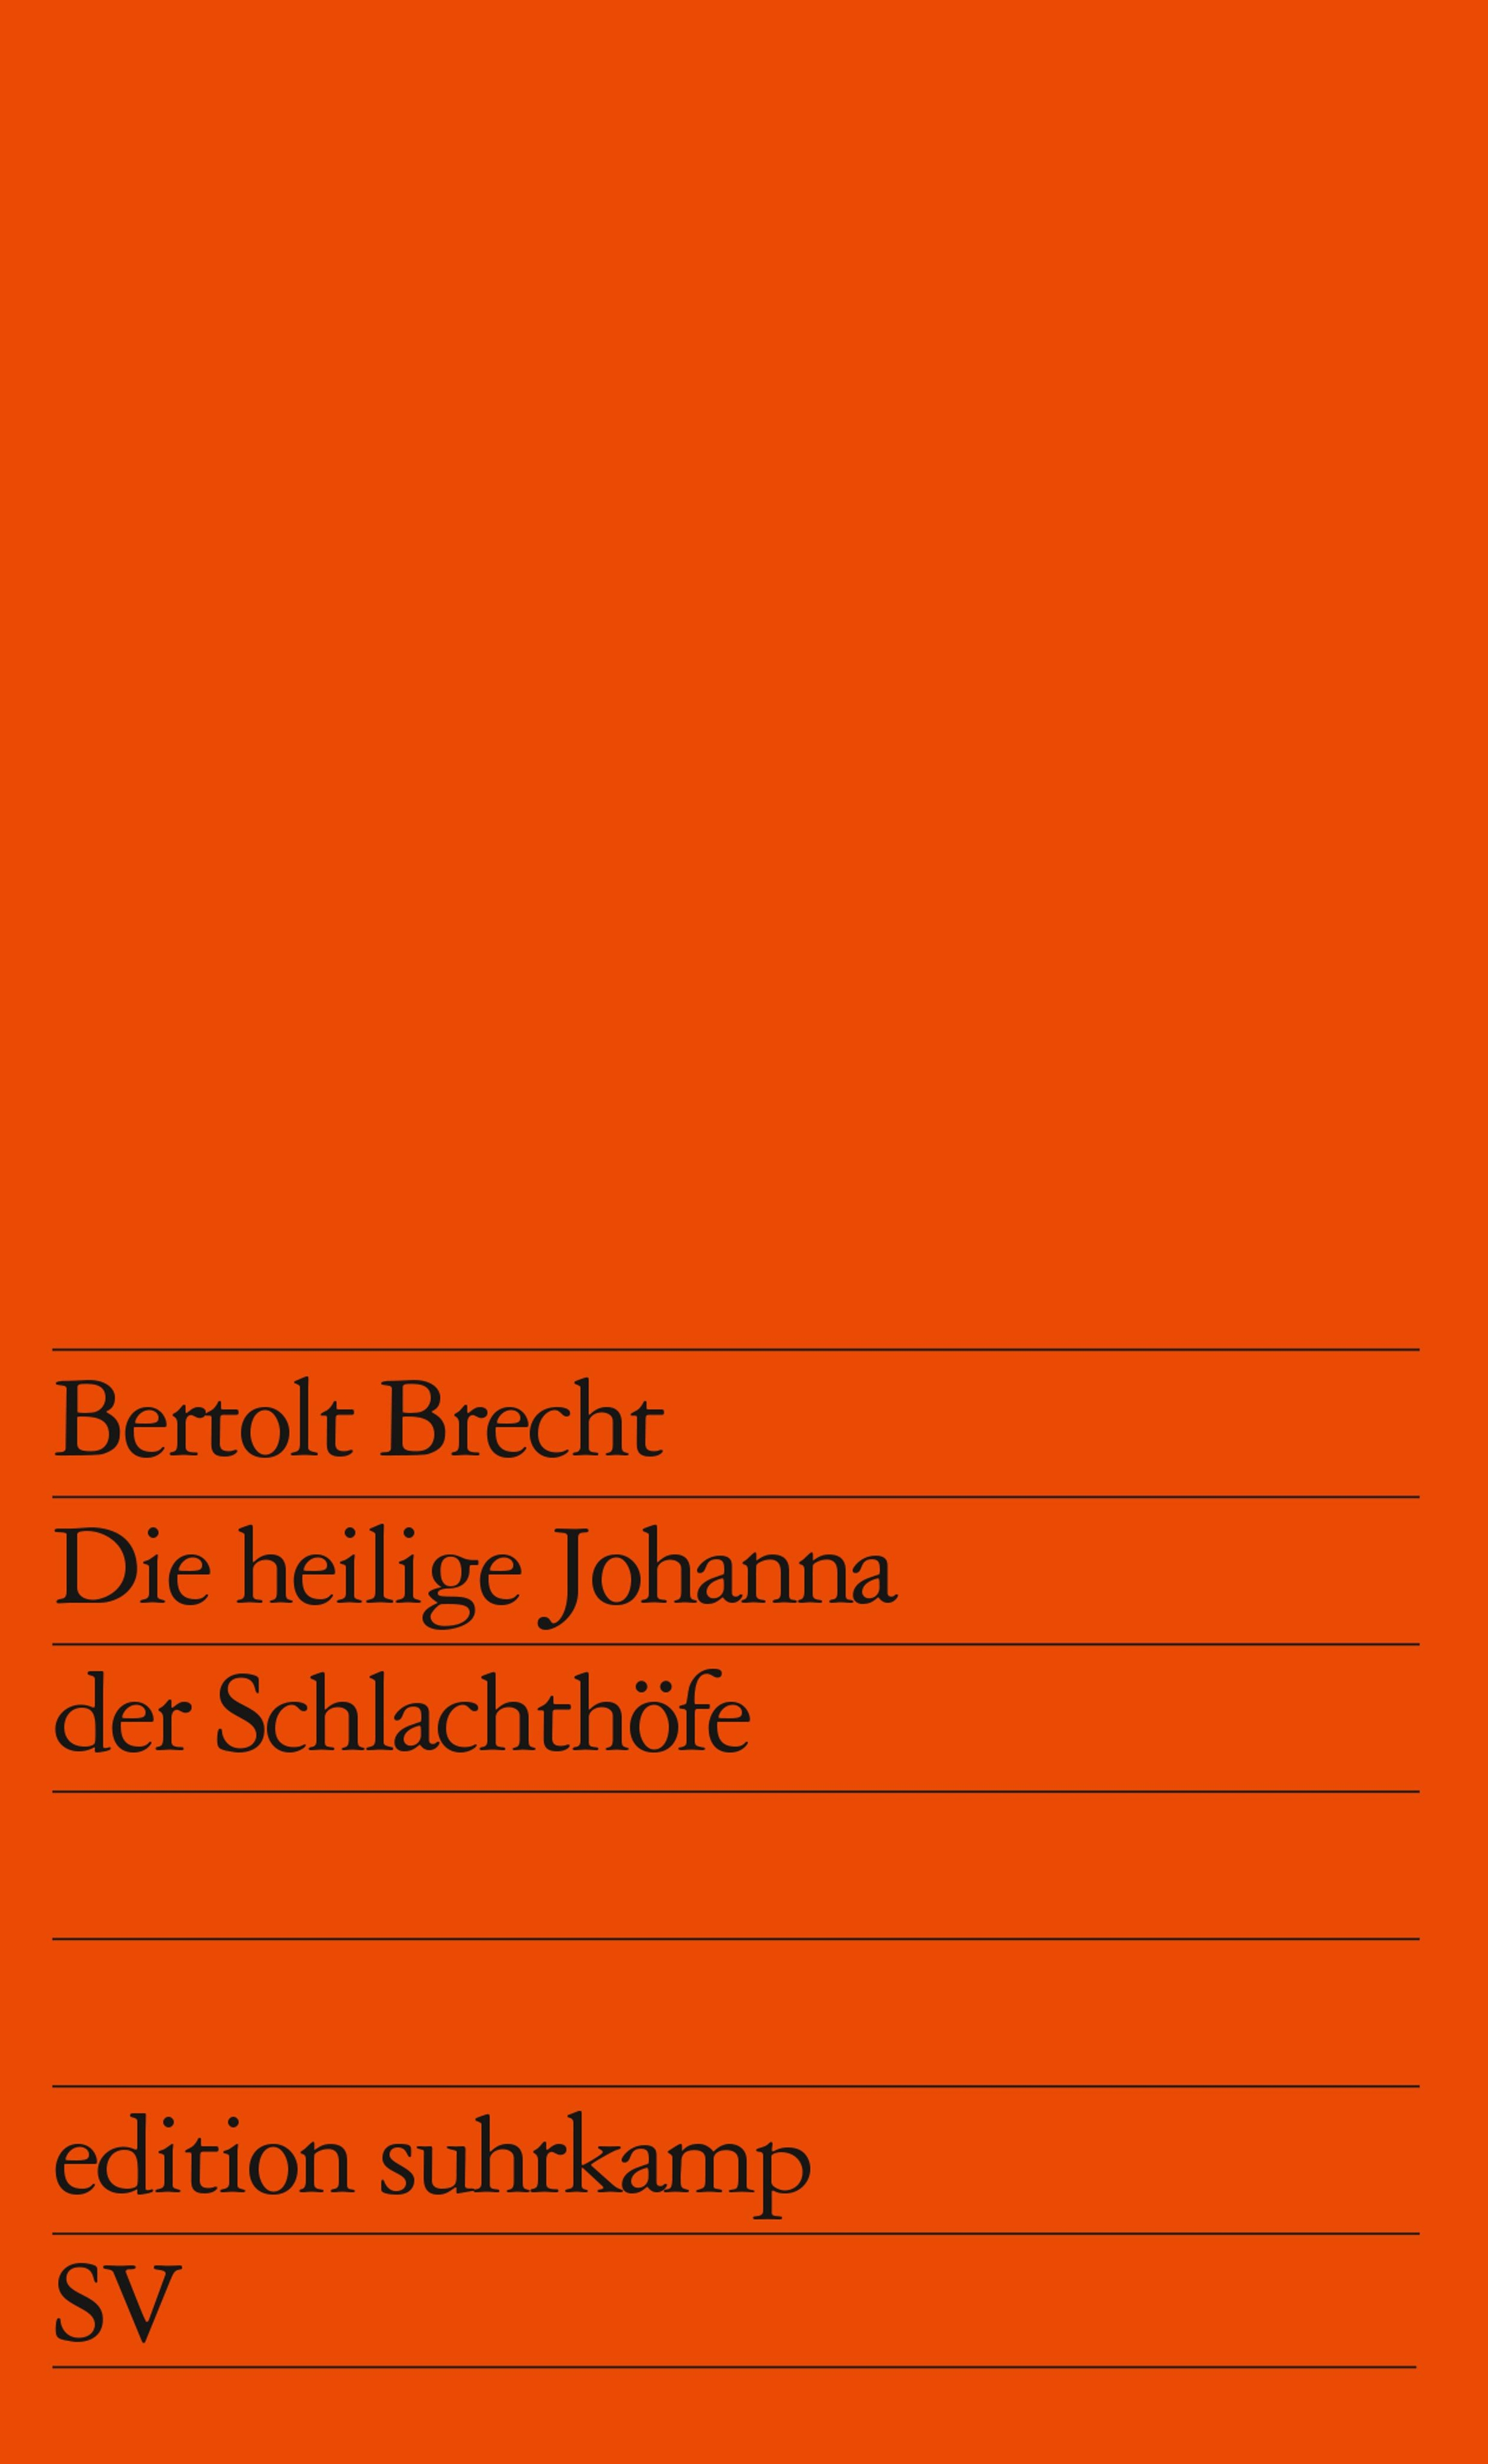 Bertolt Brecht / Die heilige Johanna der Schlachthöfe - Bild 1 von 1